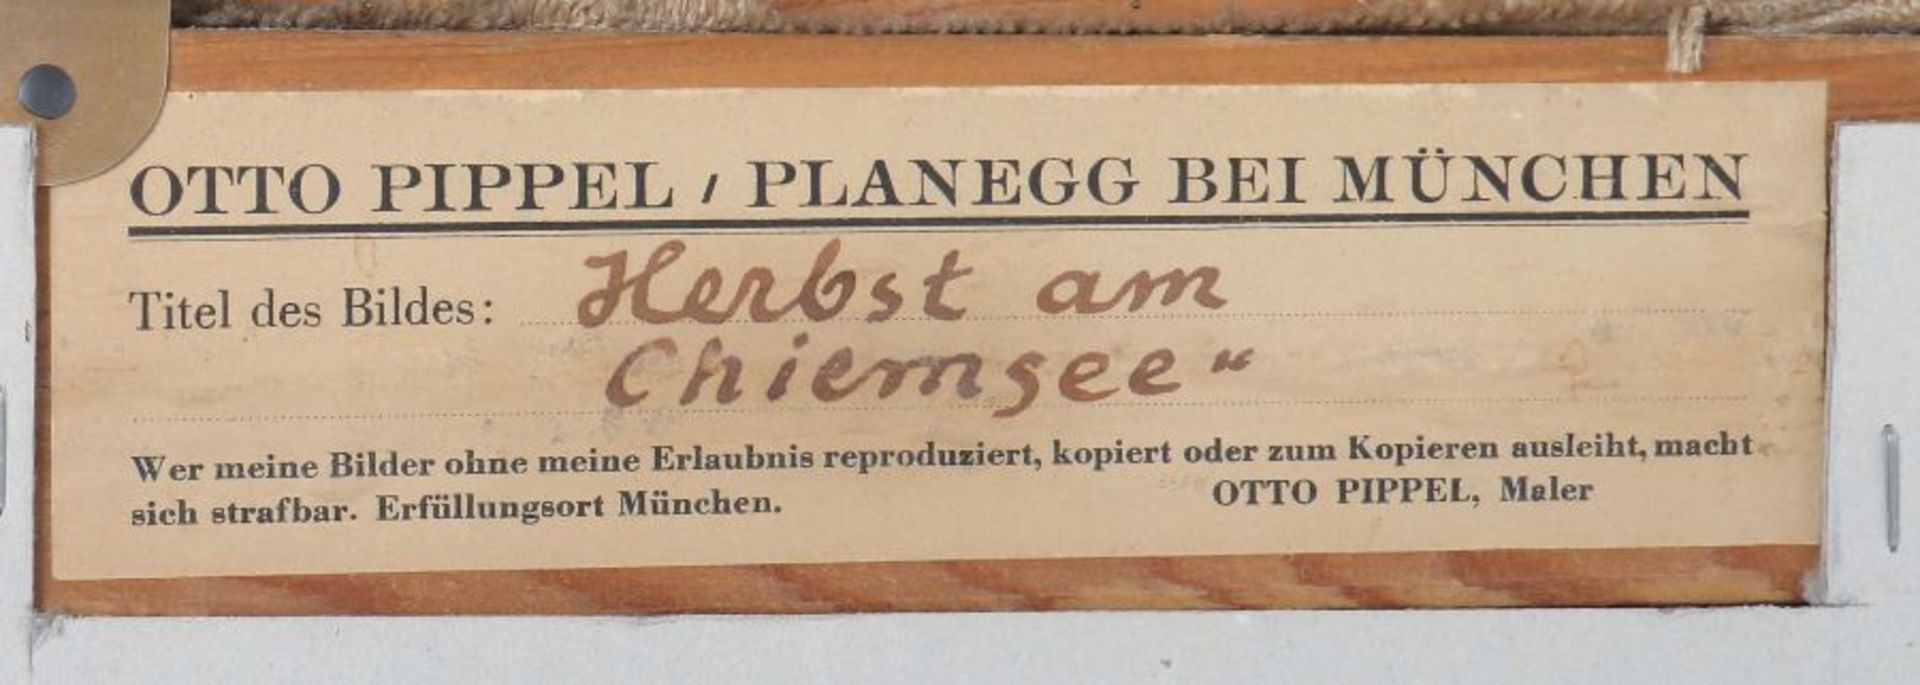 Pippel, Otto Eduard Lodz 1878 - 1960 Planegg München, war Maler ebenda. "Herbst am Chiemsee", - Bild 4 aus 4